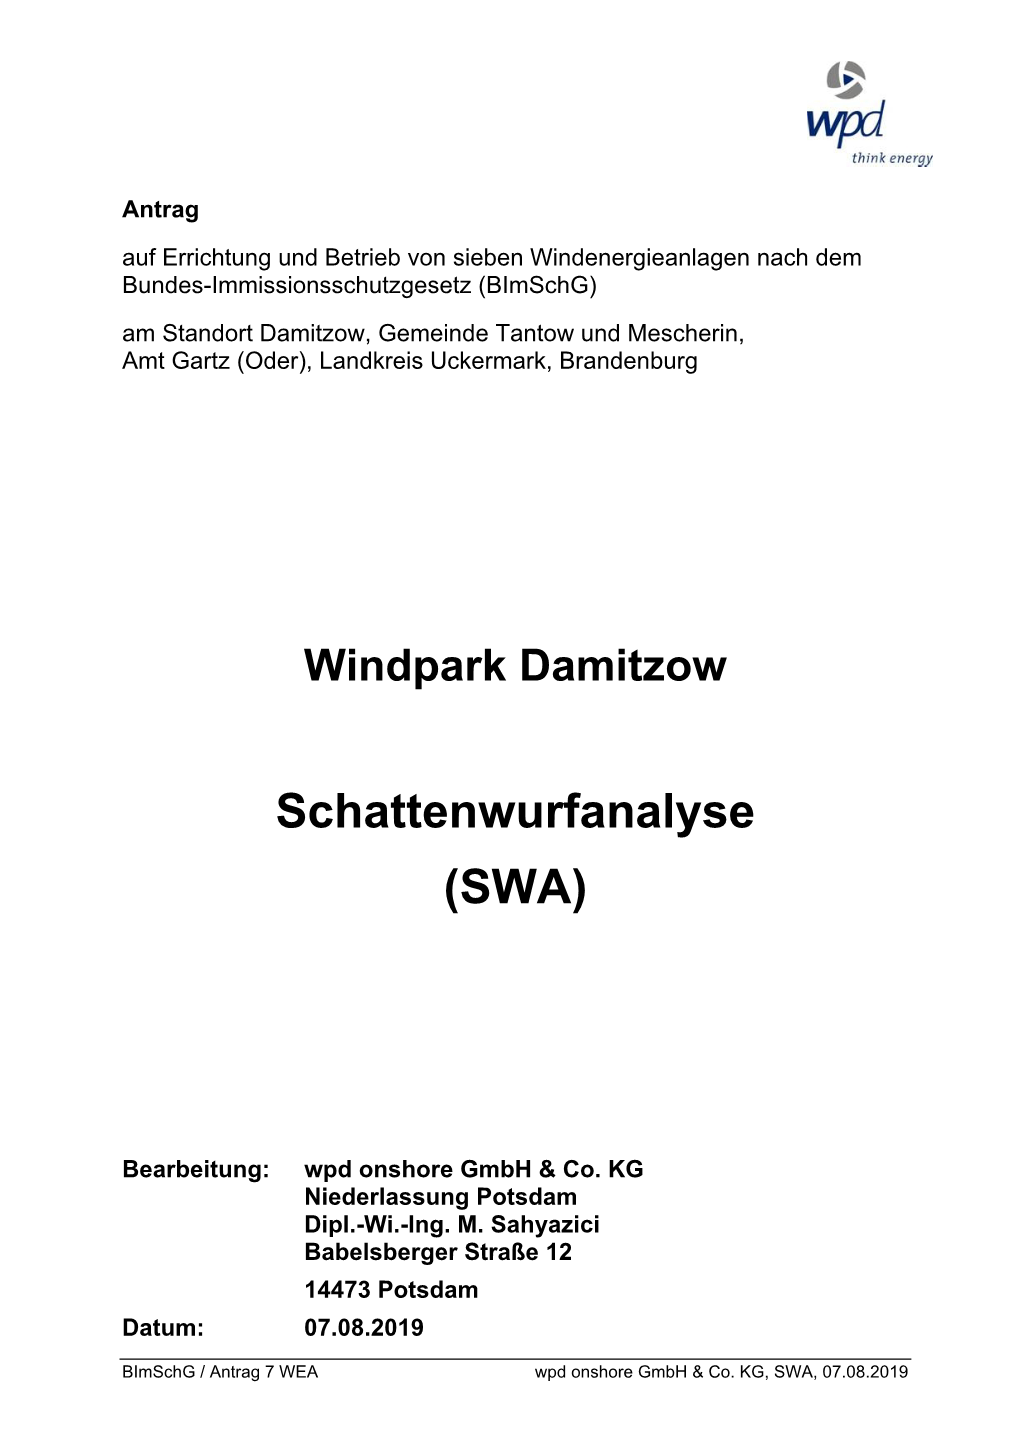 Schattenwurfanalyse (SWA)